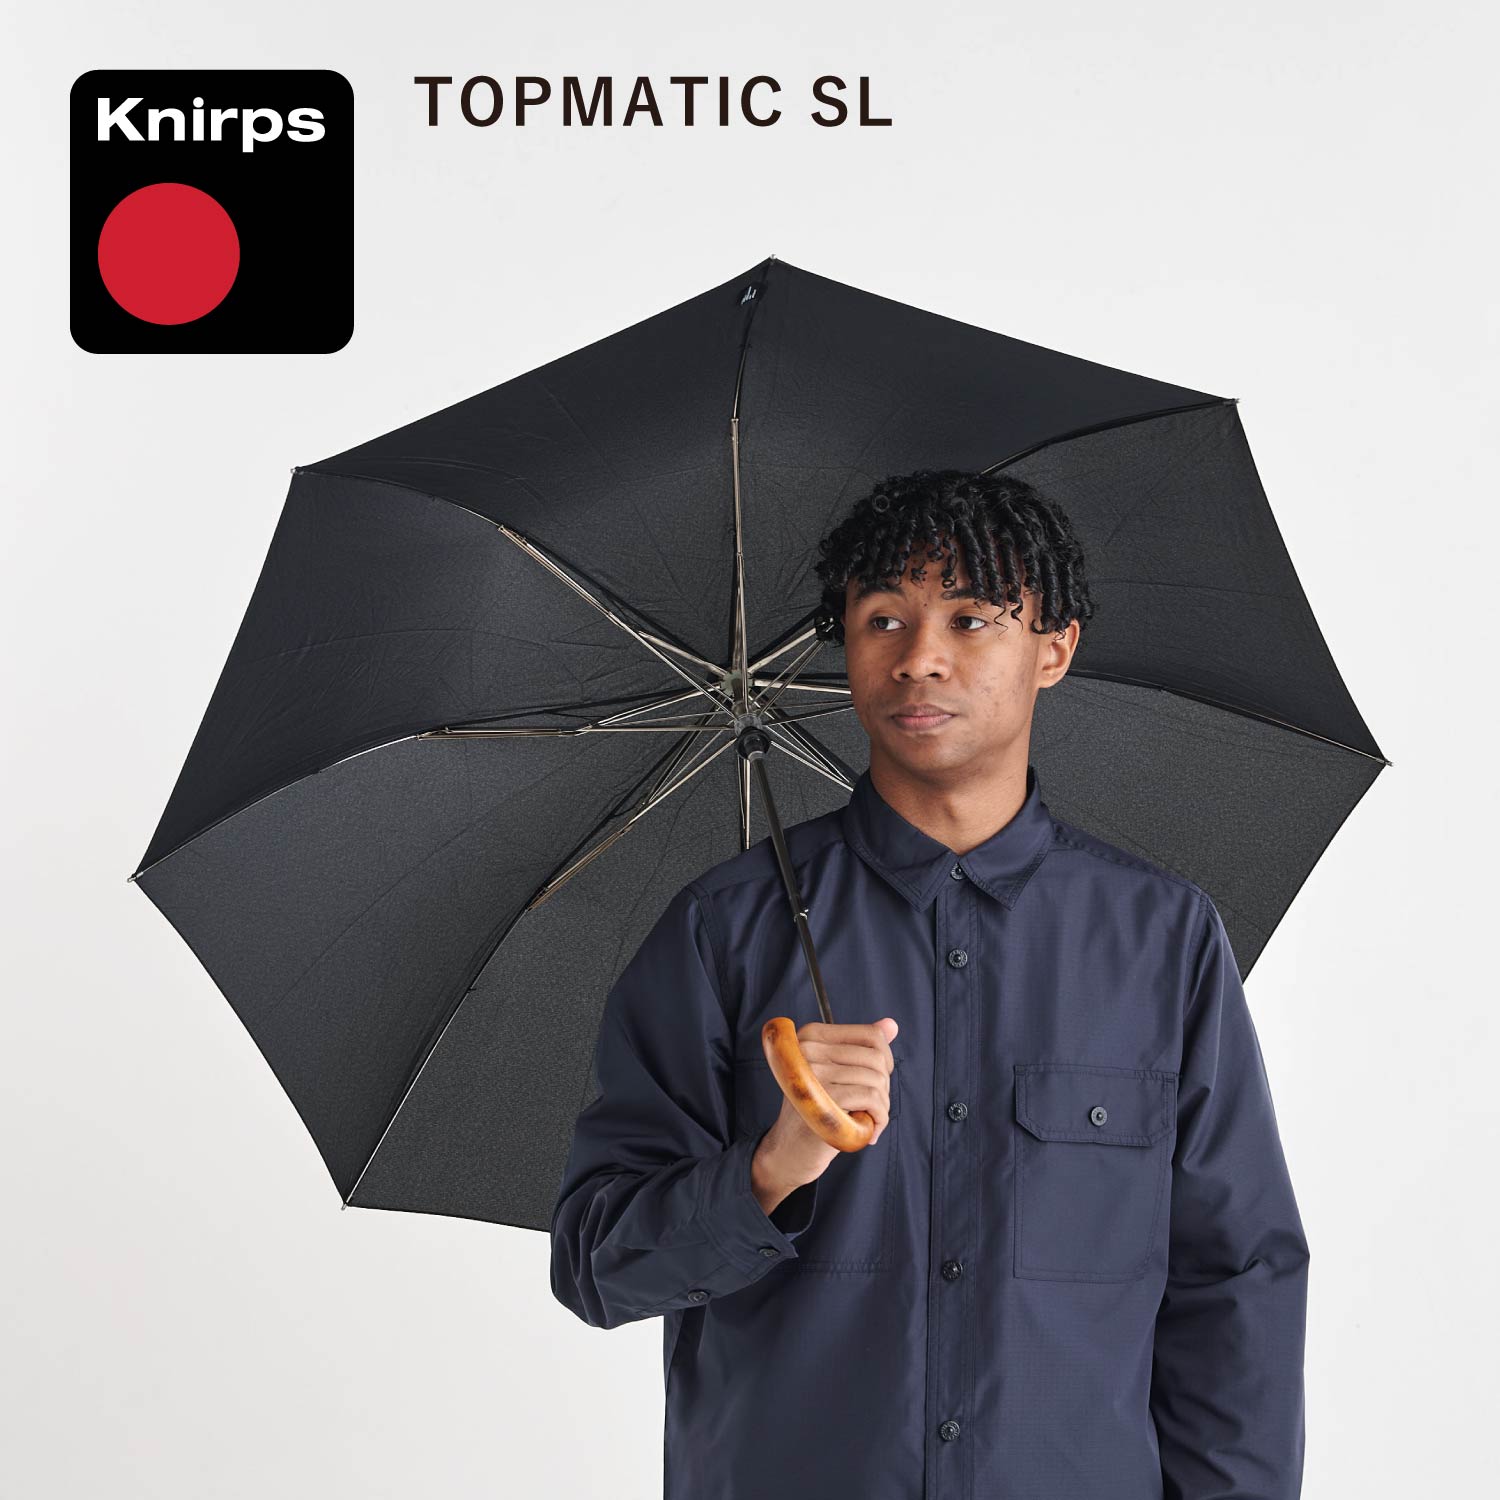 Knirps クニルプス 折りたたみ傘 折り畳み傘 軽量 コンパクト トップマティック メンズ レディース 雨傘 ワンタッチ TOPMATIC SL ブラック 黒 KNS828-710